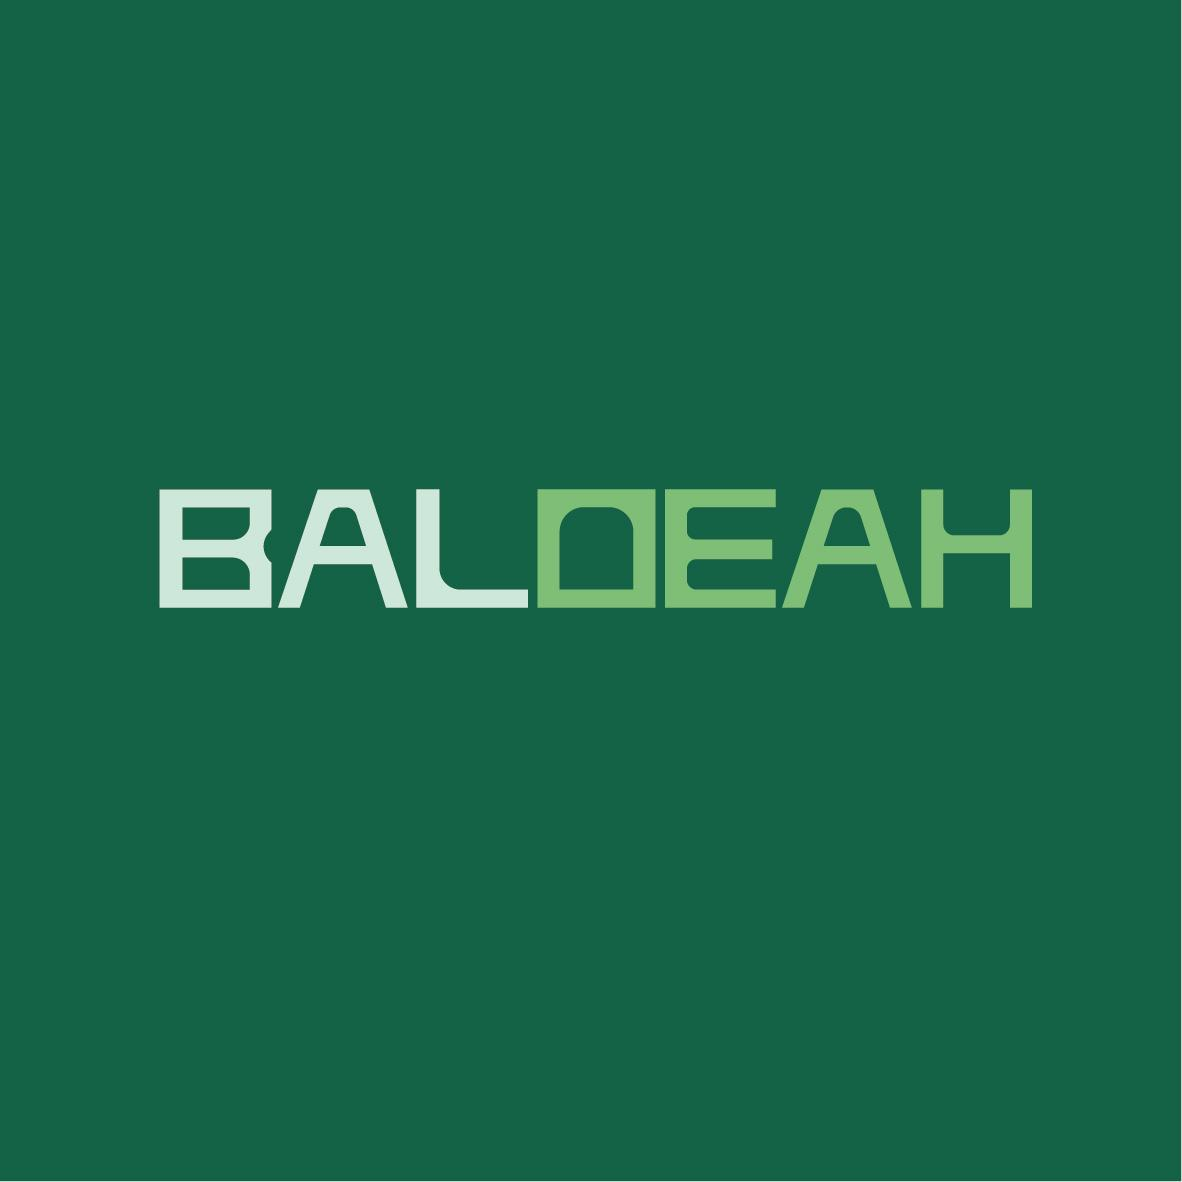 35类-广告销售BALOEAH商标转让